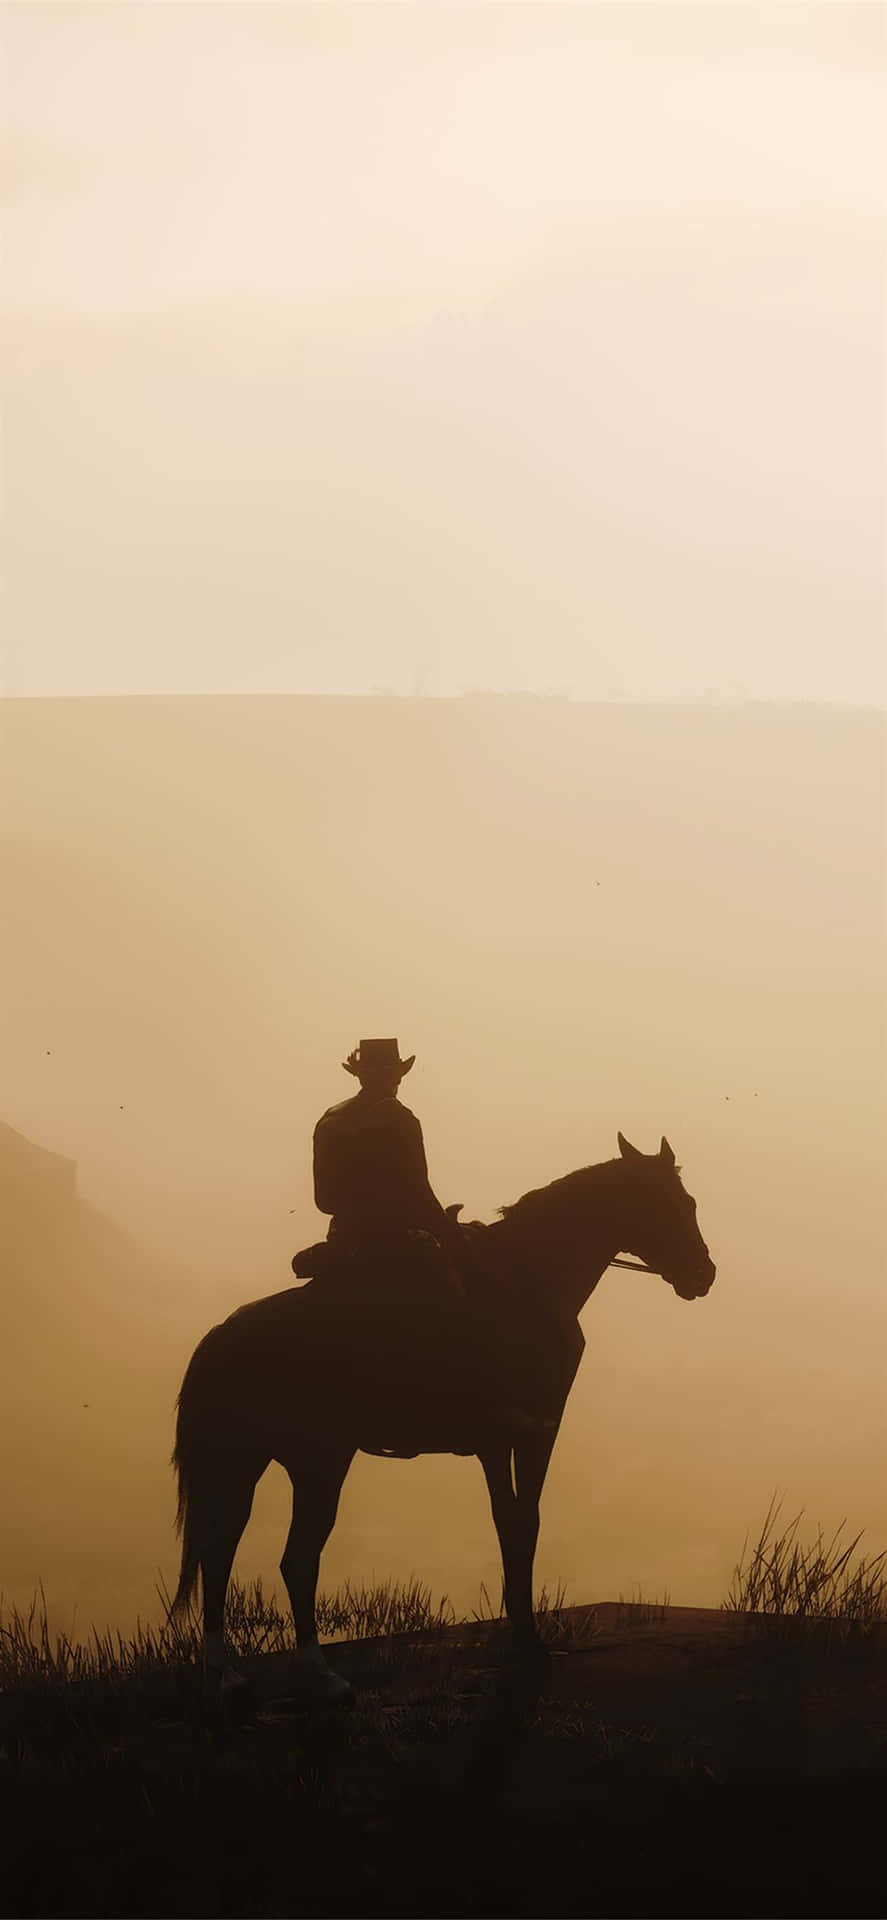 Migliorsfondo Di Red Dead Redemption 2 Con Silhouette Di Un Uomo Su Un Cavallo